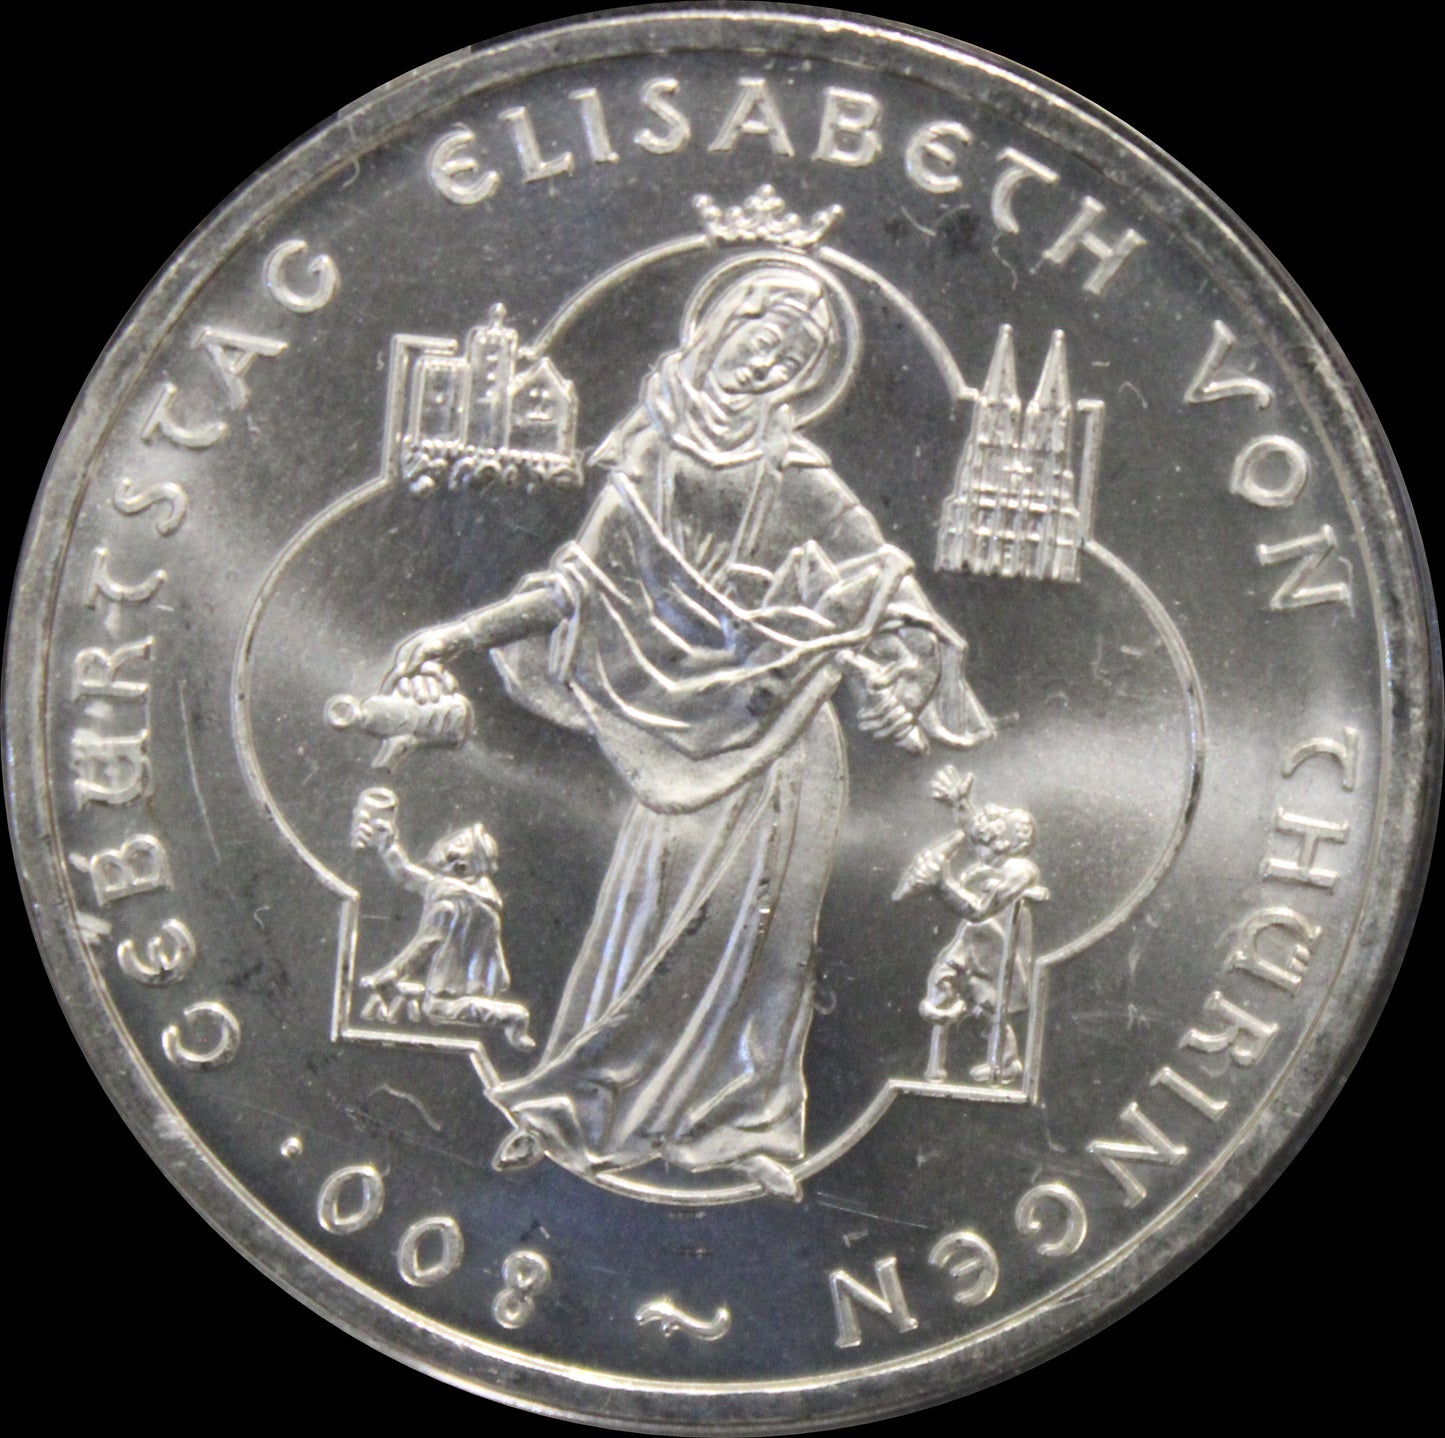 800. GEBURTSTAG ELISABETH VON THÜRINGEN, Serie 10 € Silber Gedenkmünzen Deutschland, Stempelglanz, 2007